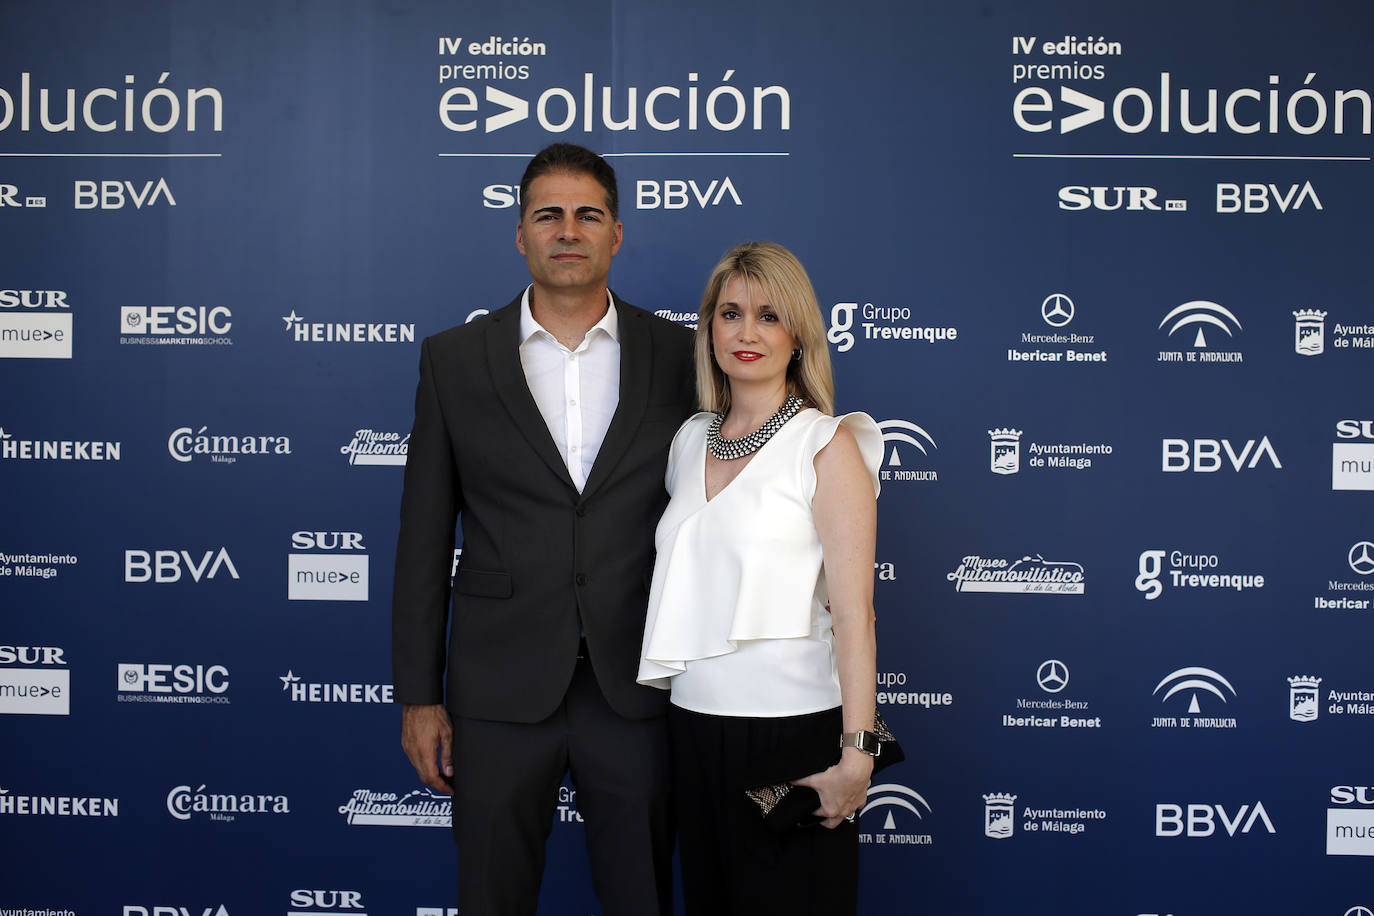 Fotos: Las imágenes de los premios Evolución Sur.es-BBVA